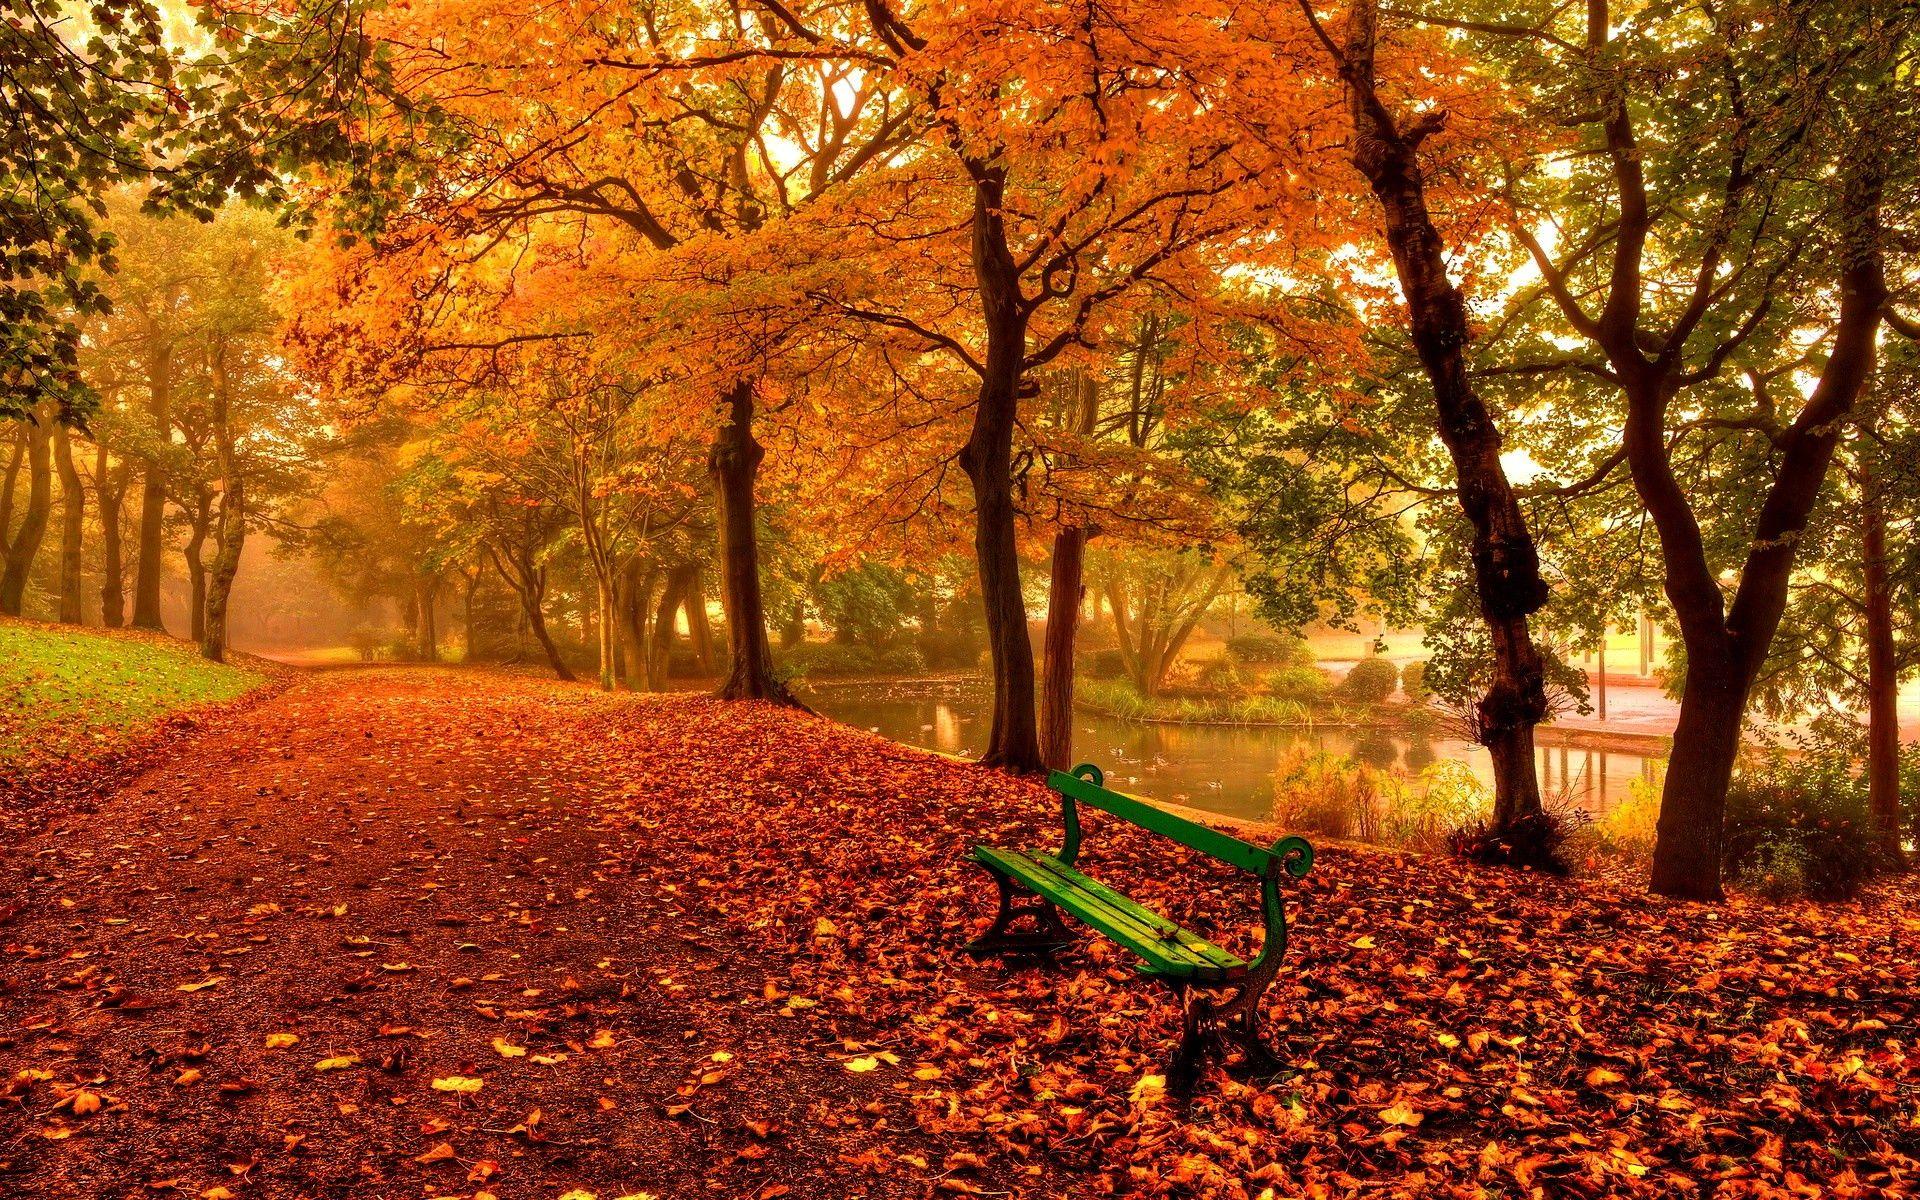 Relaxing Autumn Day Wallpaper